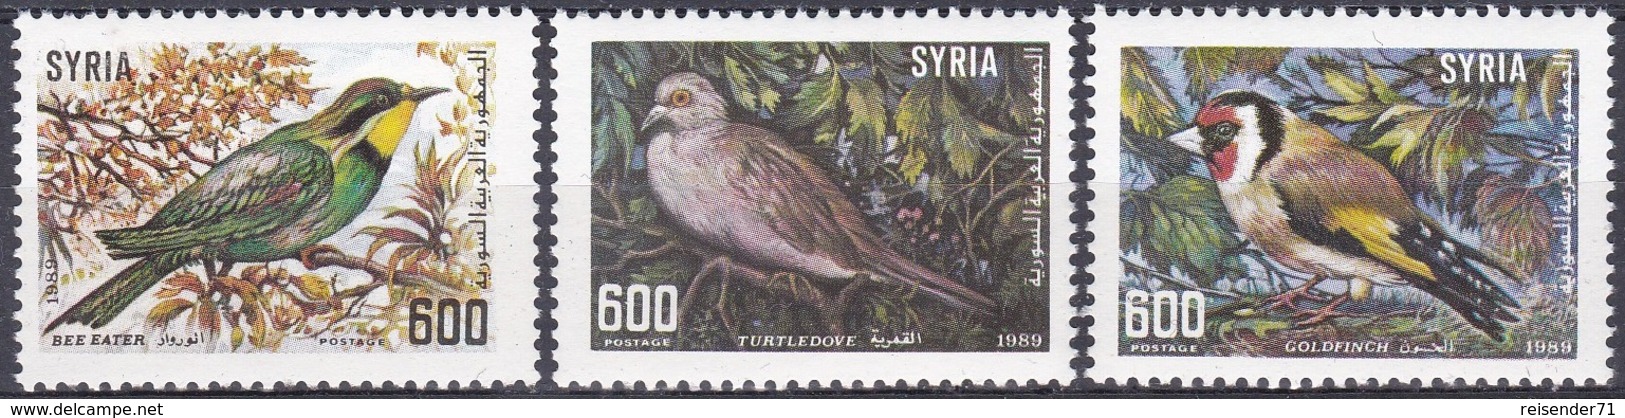 Syrien Syria 1989 Tiere Fauna Animals Vögel Birds Stieglitz Bienenfresser Turteltauben Tauben Doves, Mi. 1745-7 ** - Syrie